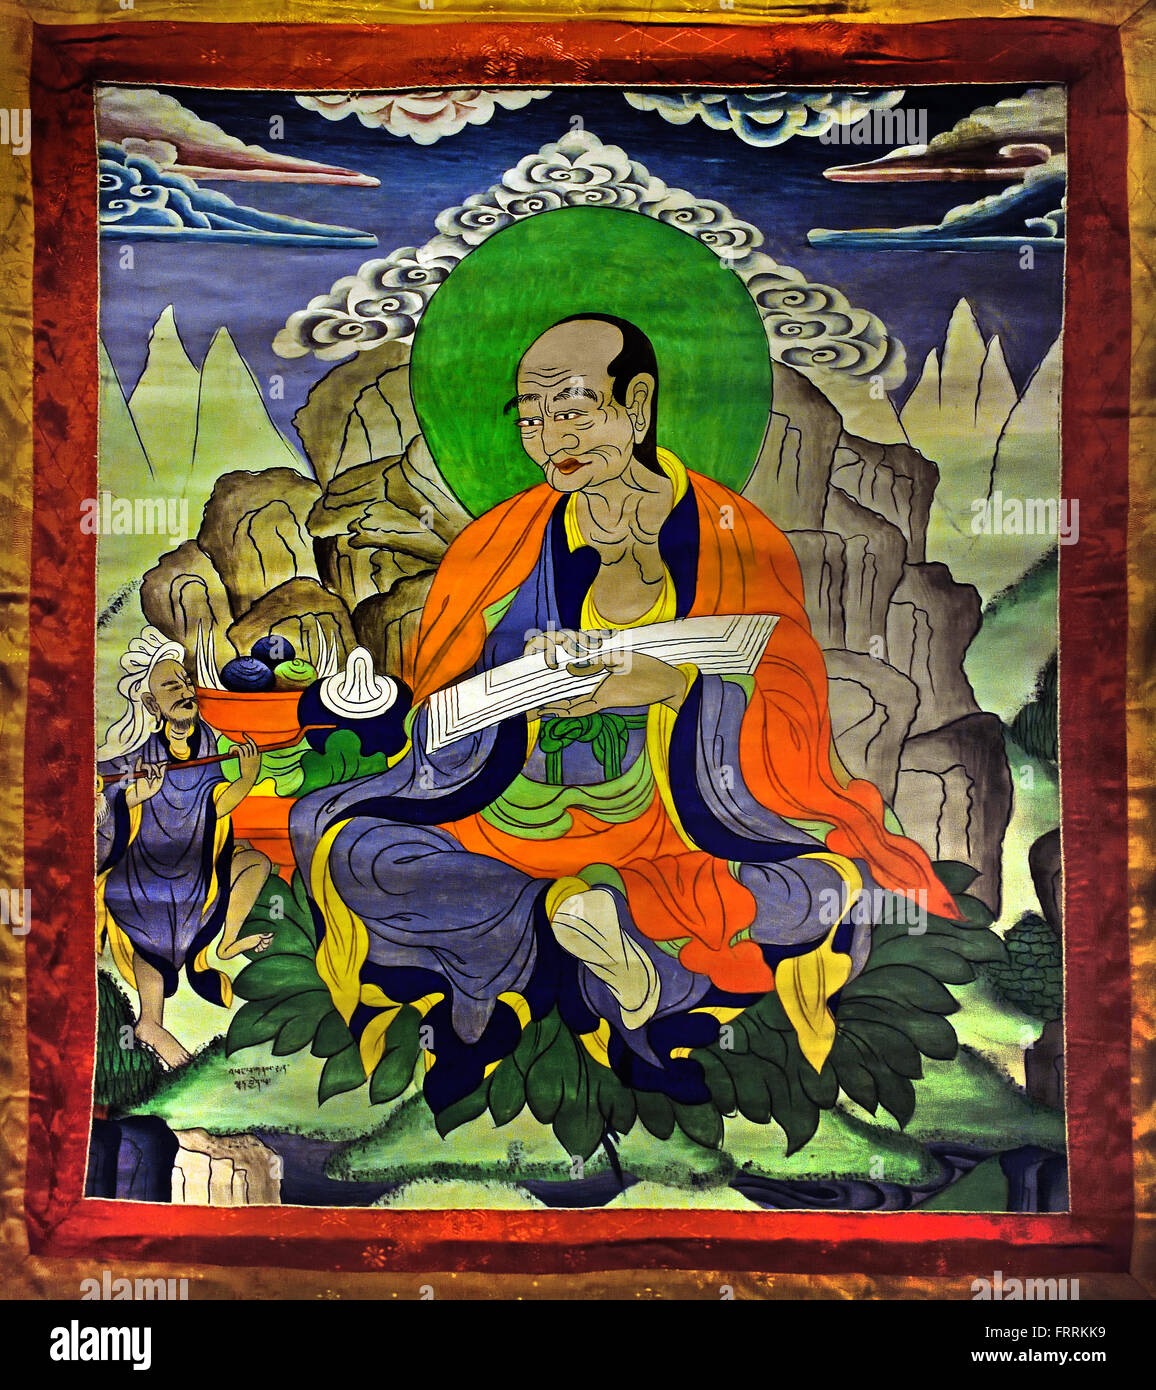 Scroll pittura tibetano, Tibet, Cina thangka, sono visti come i primi grandi discepoli del Buddha. ( Un thangka, variamente spelt come thangka, tangka, thanka, o tanka è un dipinto buddista tibetano su cotone, applicazione di seta, di solito raffigurante una divinità buddista, ) Foto Stock